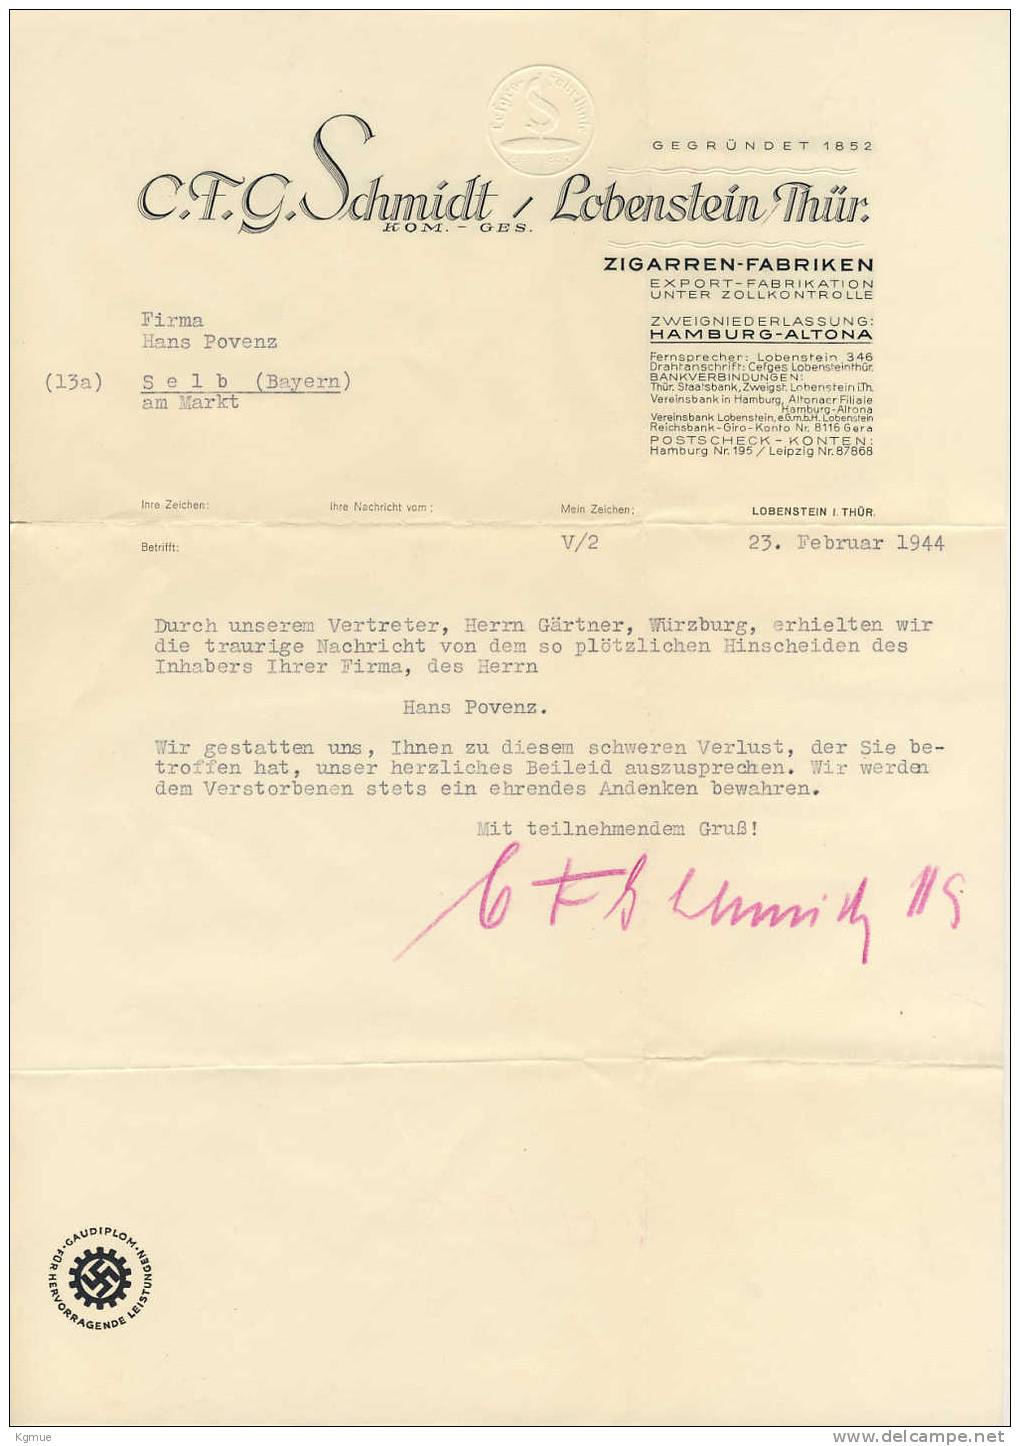 Briefpapier Und Briefumschlag Der C.F.G. Schmidt K.-G. Zigarrenfabrik Lobenstein Thüringen, Februar 1944 - Lobenstein